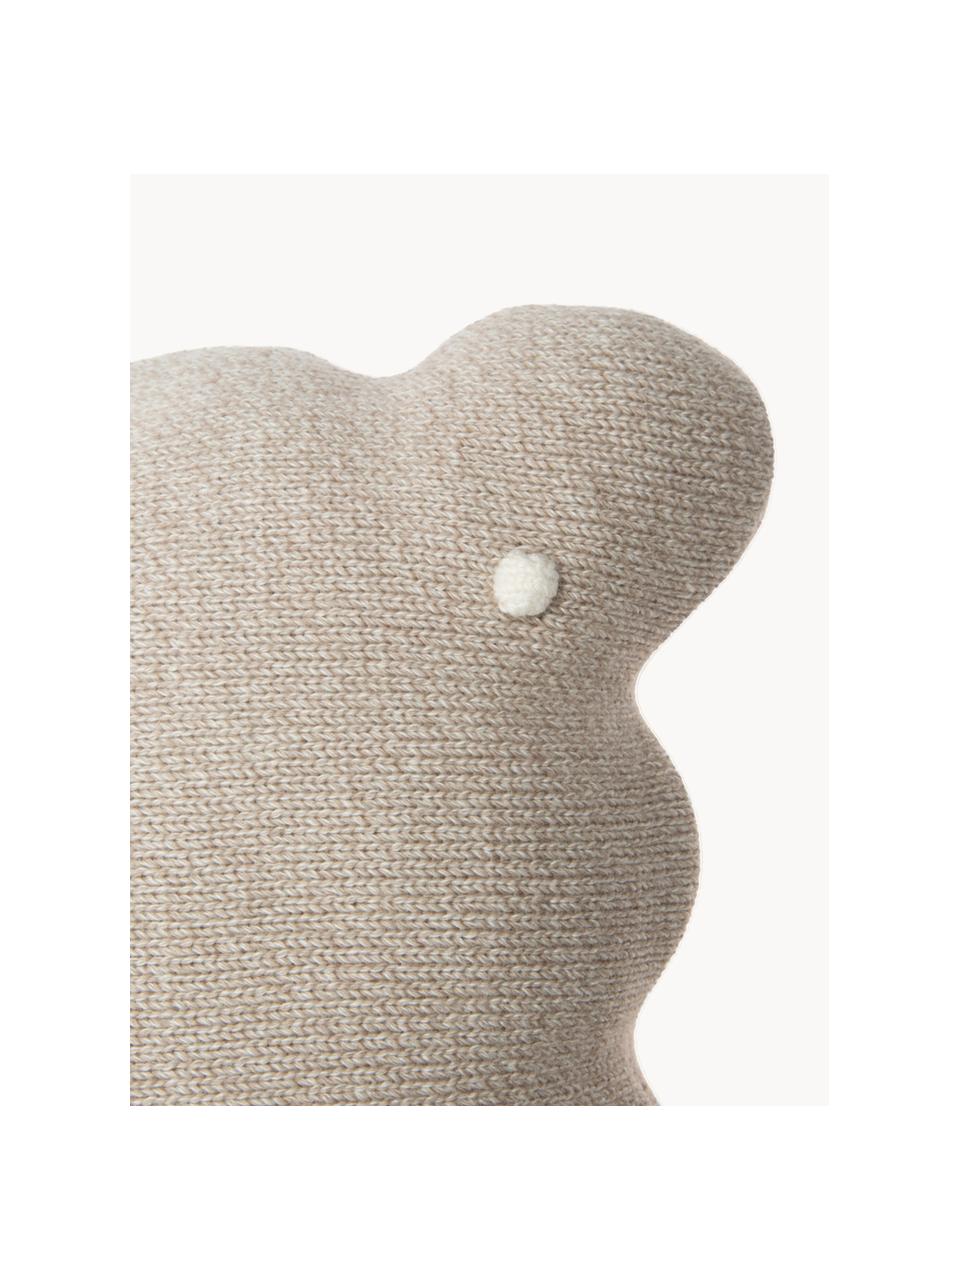 Coussin douillet en coton brodé à la main Biscuit, Taupe, blanc cassé, larg. 25 x long. 35 cm